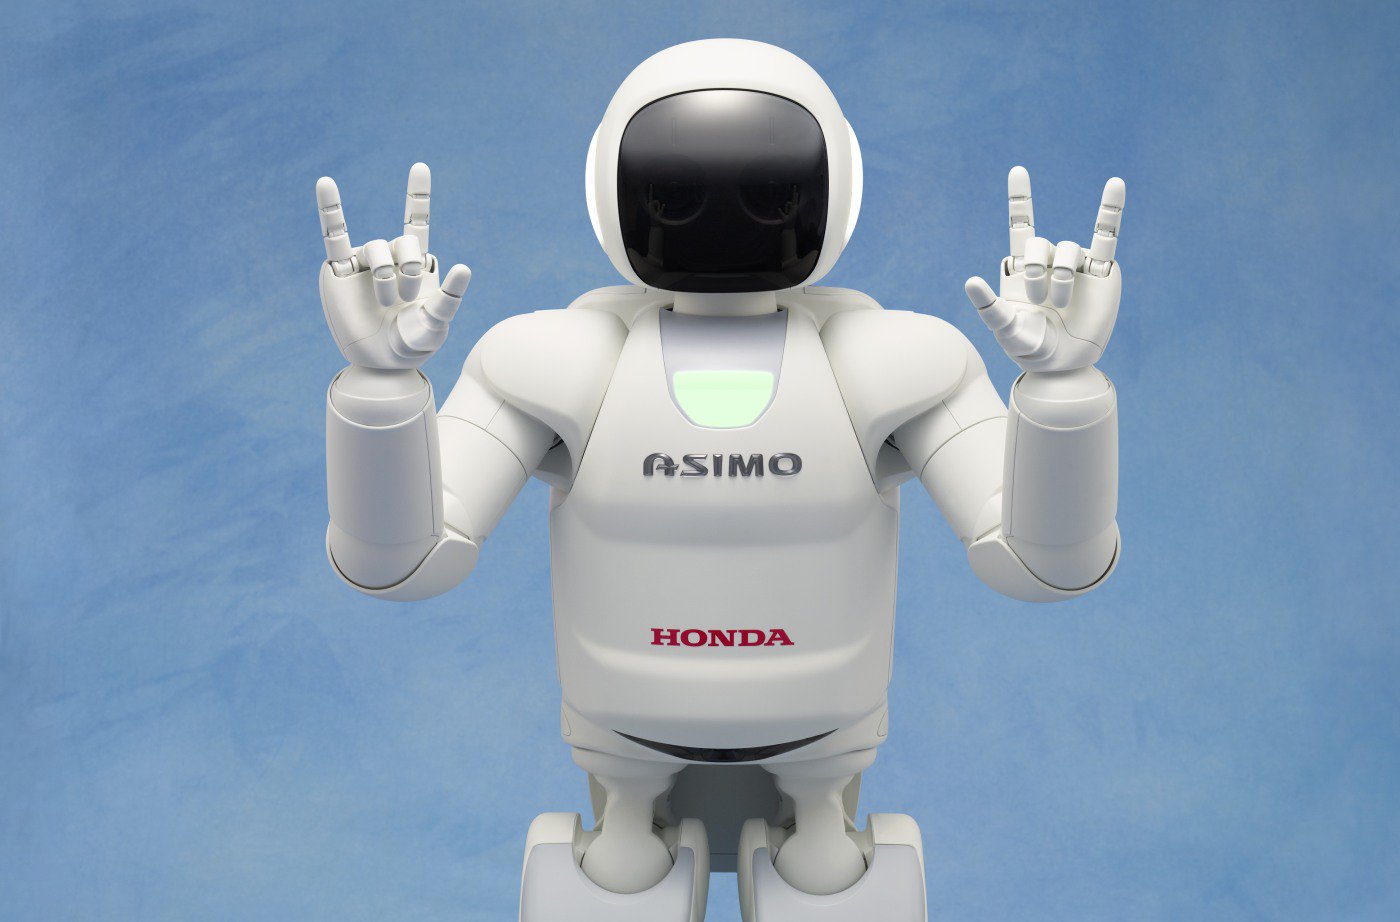 A Honda deixa o desenvolvimento de robôs bípedes Asimo